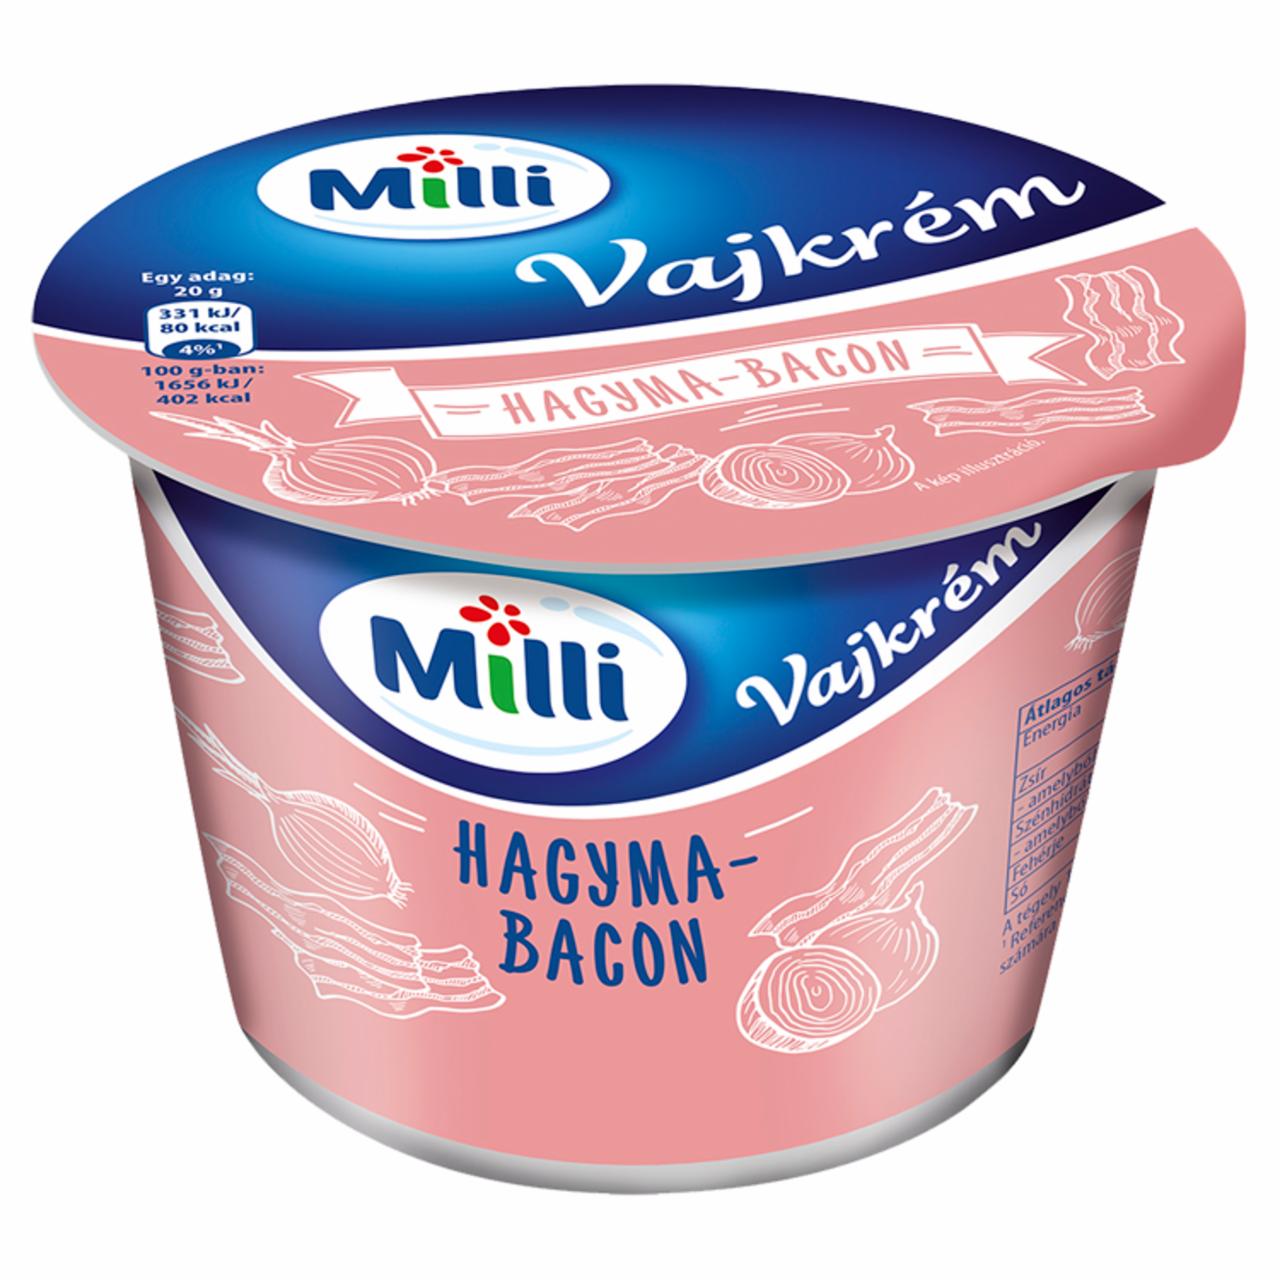 Képek - Milli hagyma-bacon ízű vajkrém 200 g